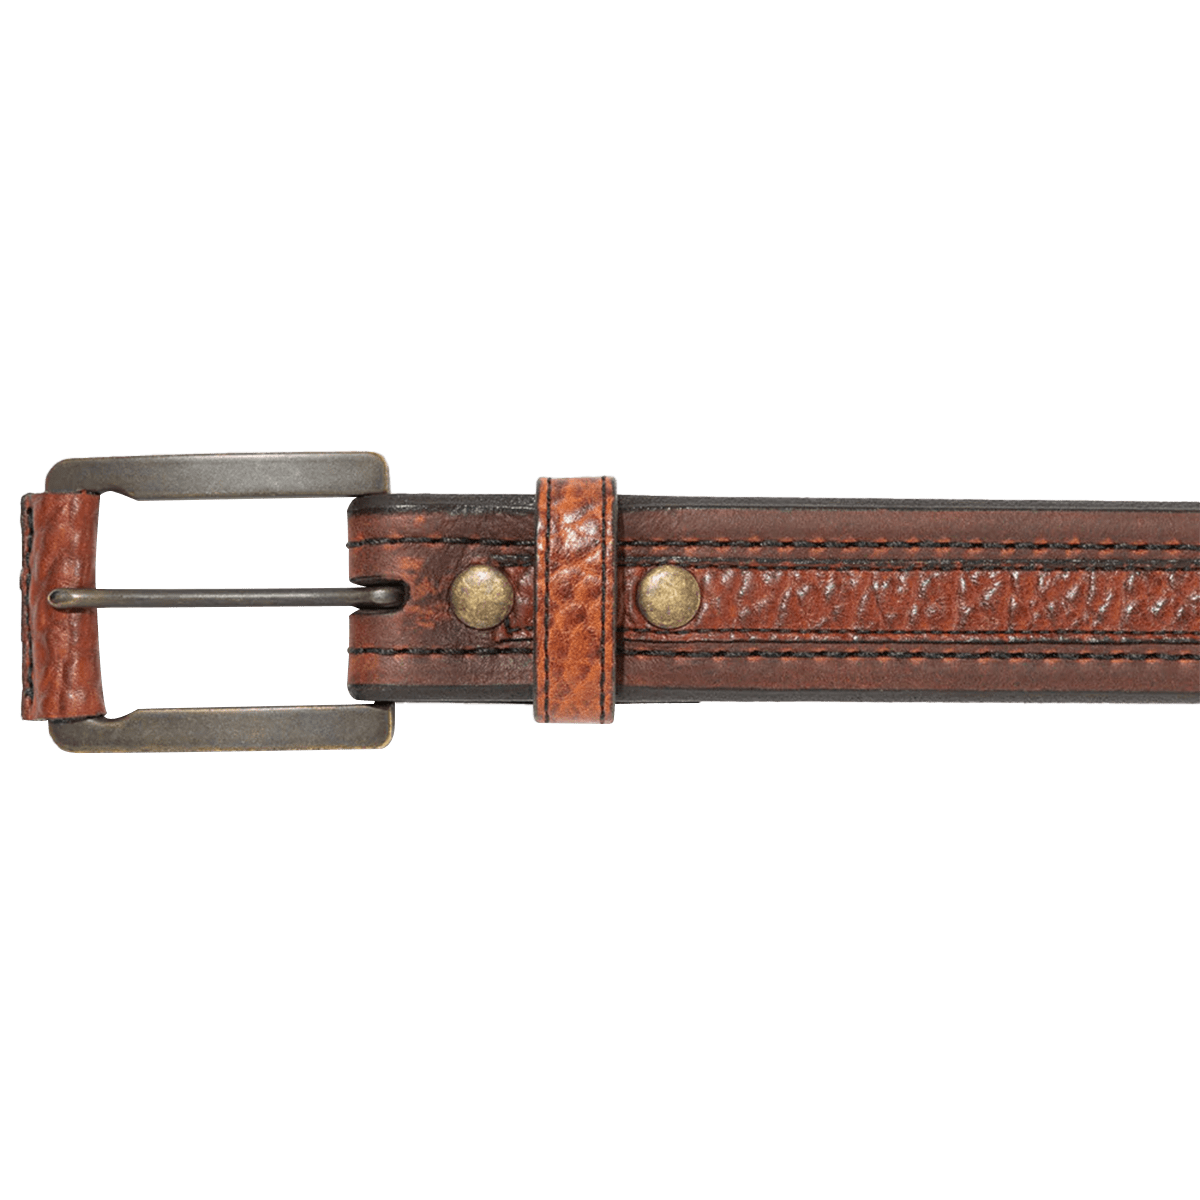 Western belt buckle with buffalo 40 mm